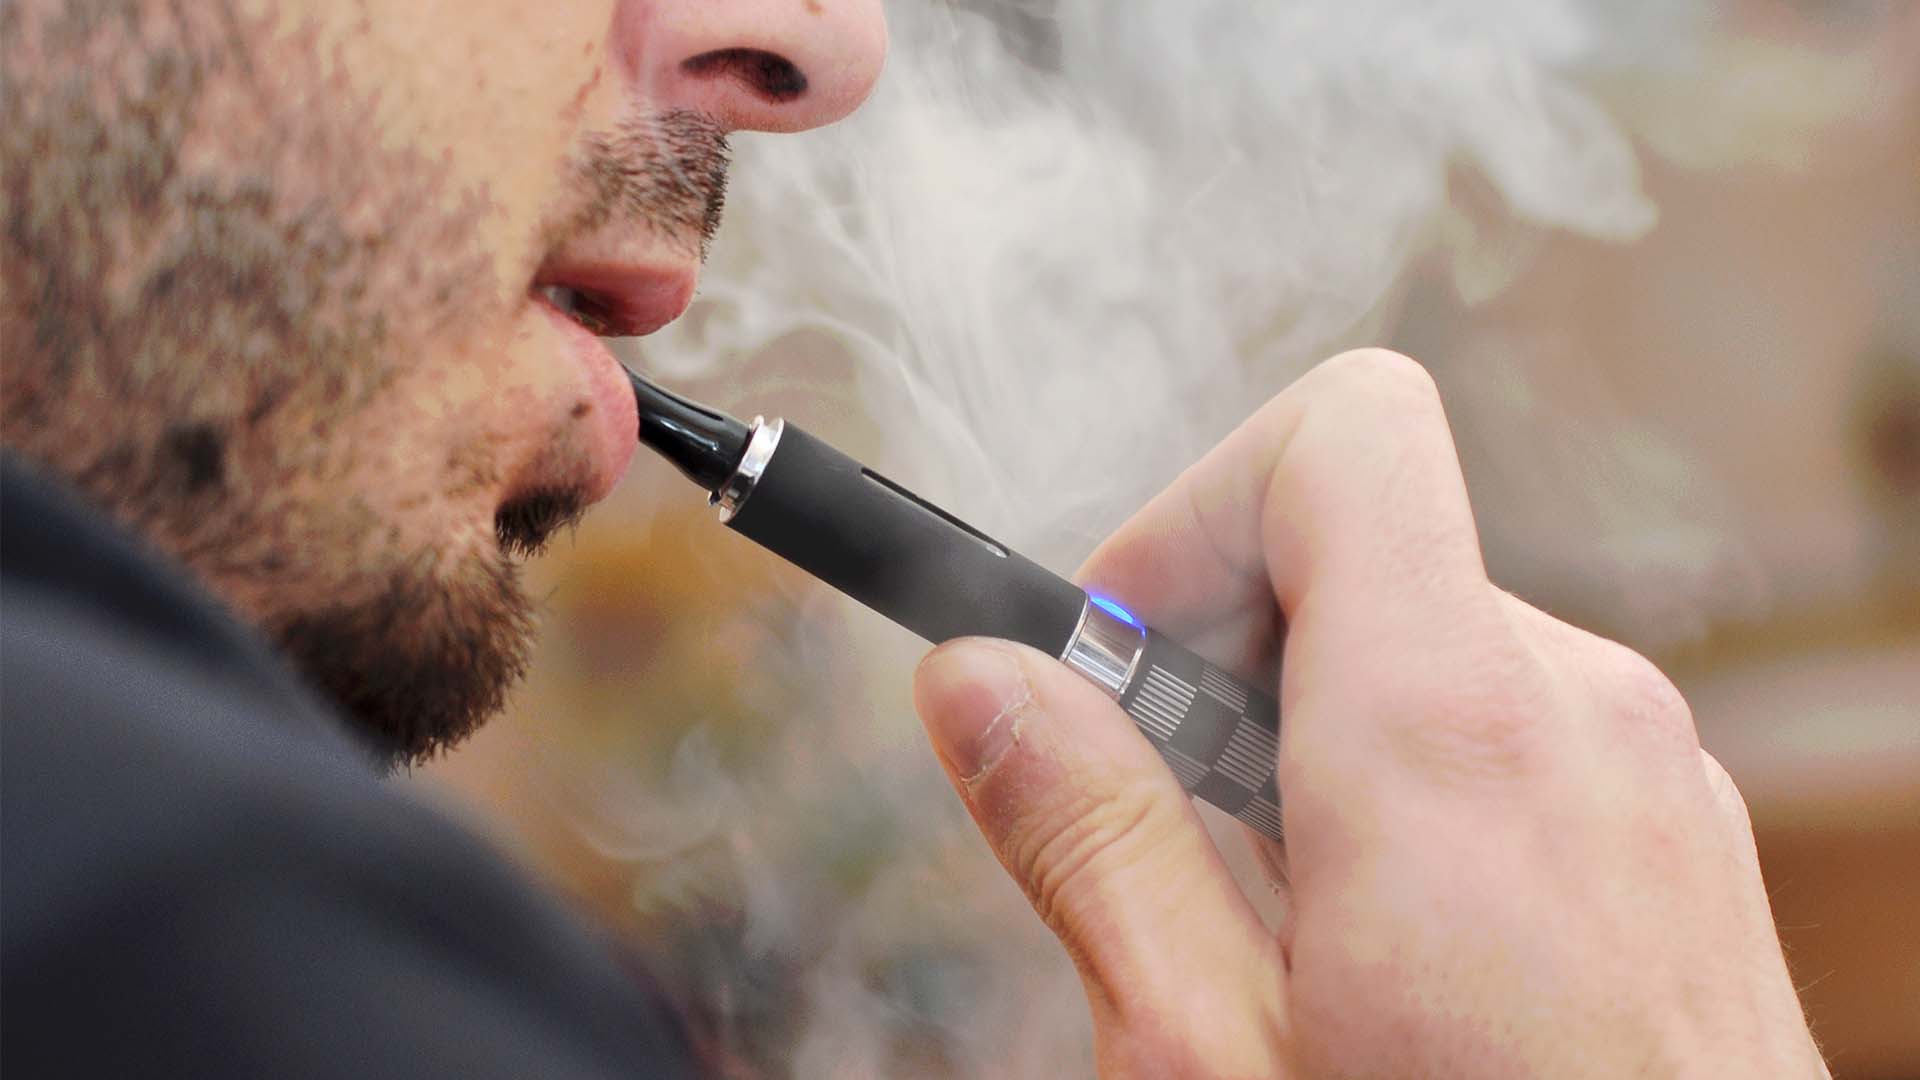 Según vieron los investigadores, en comparación con los no fumadores, quienes fumaban cigarrillo electrónico mostraban alteraciones moleculares en sus perfiles de expresión génica que están asociadas con los fumadores de cigarrillos (Getty)